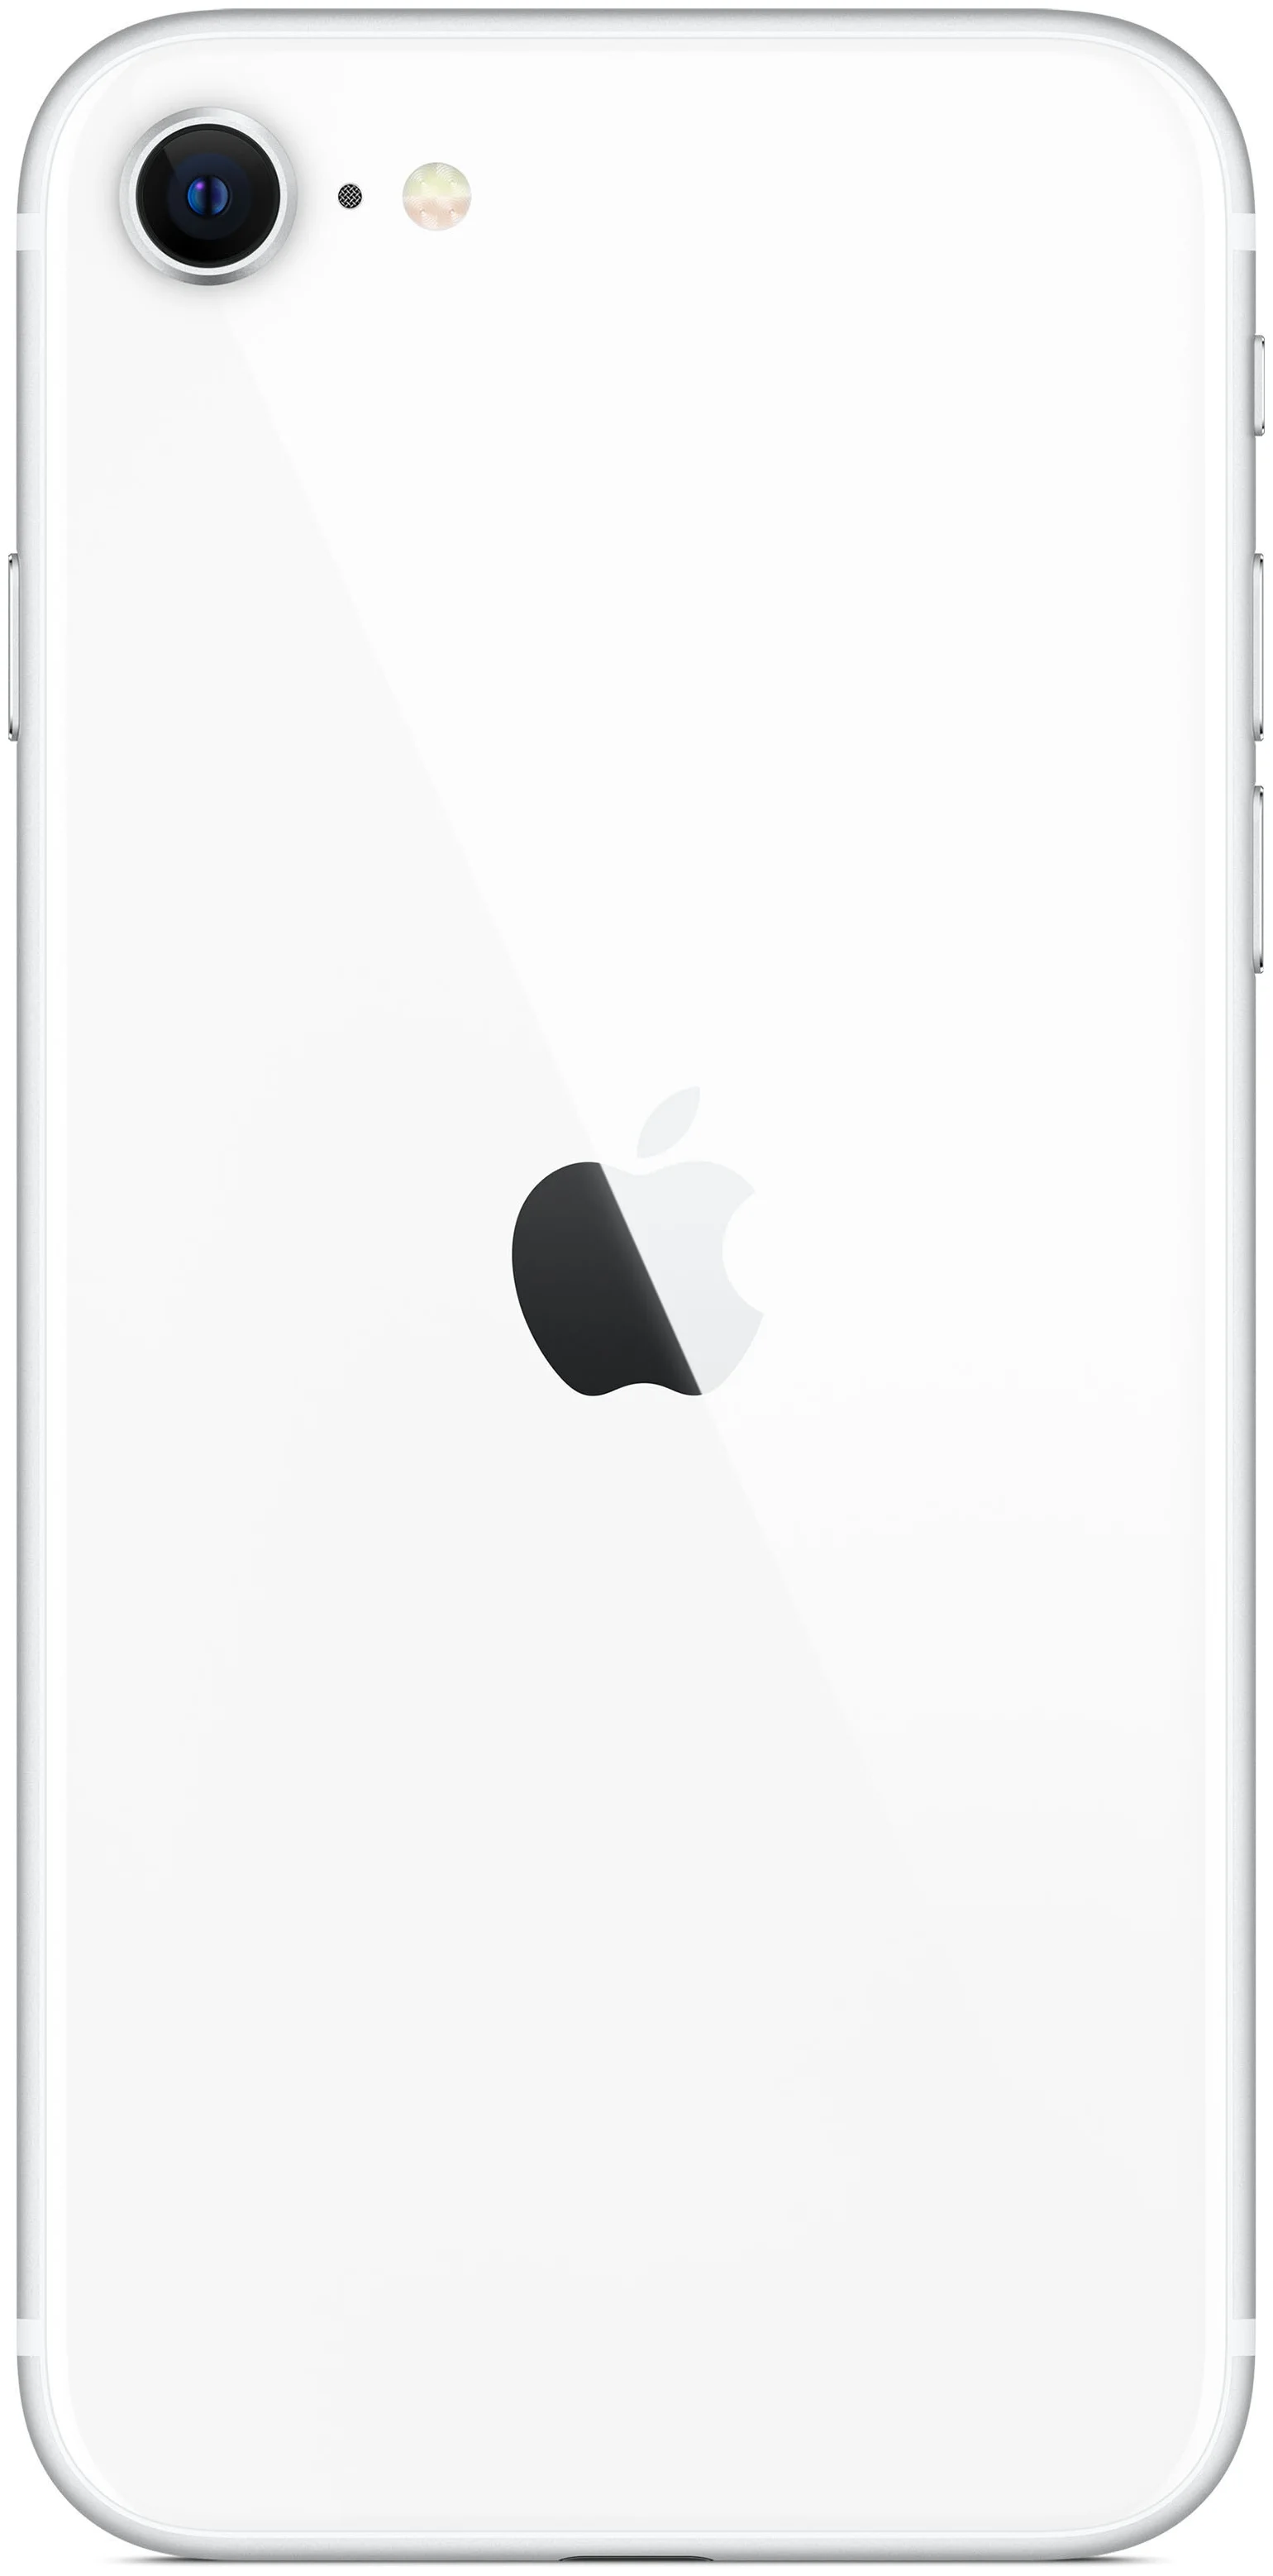 Apple iPhone SE 2020 256GB - оперативная память: 3 ГБ